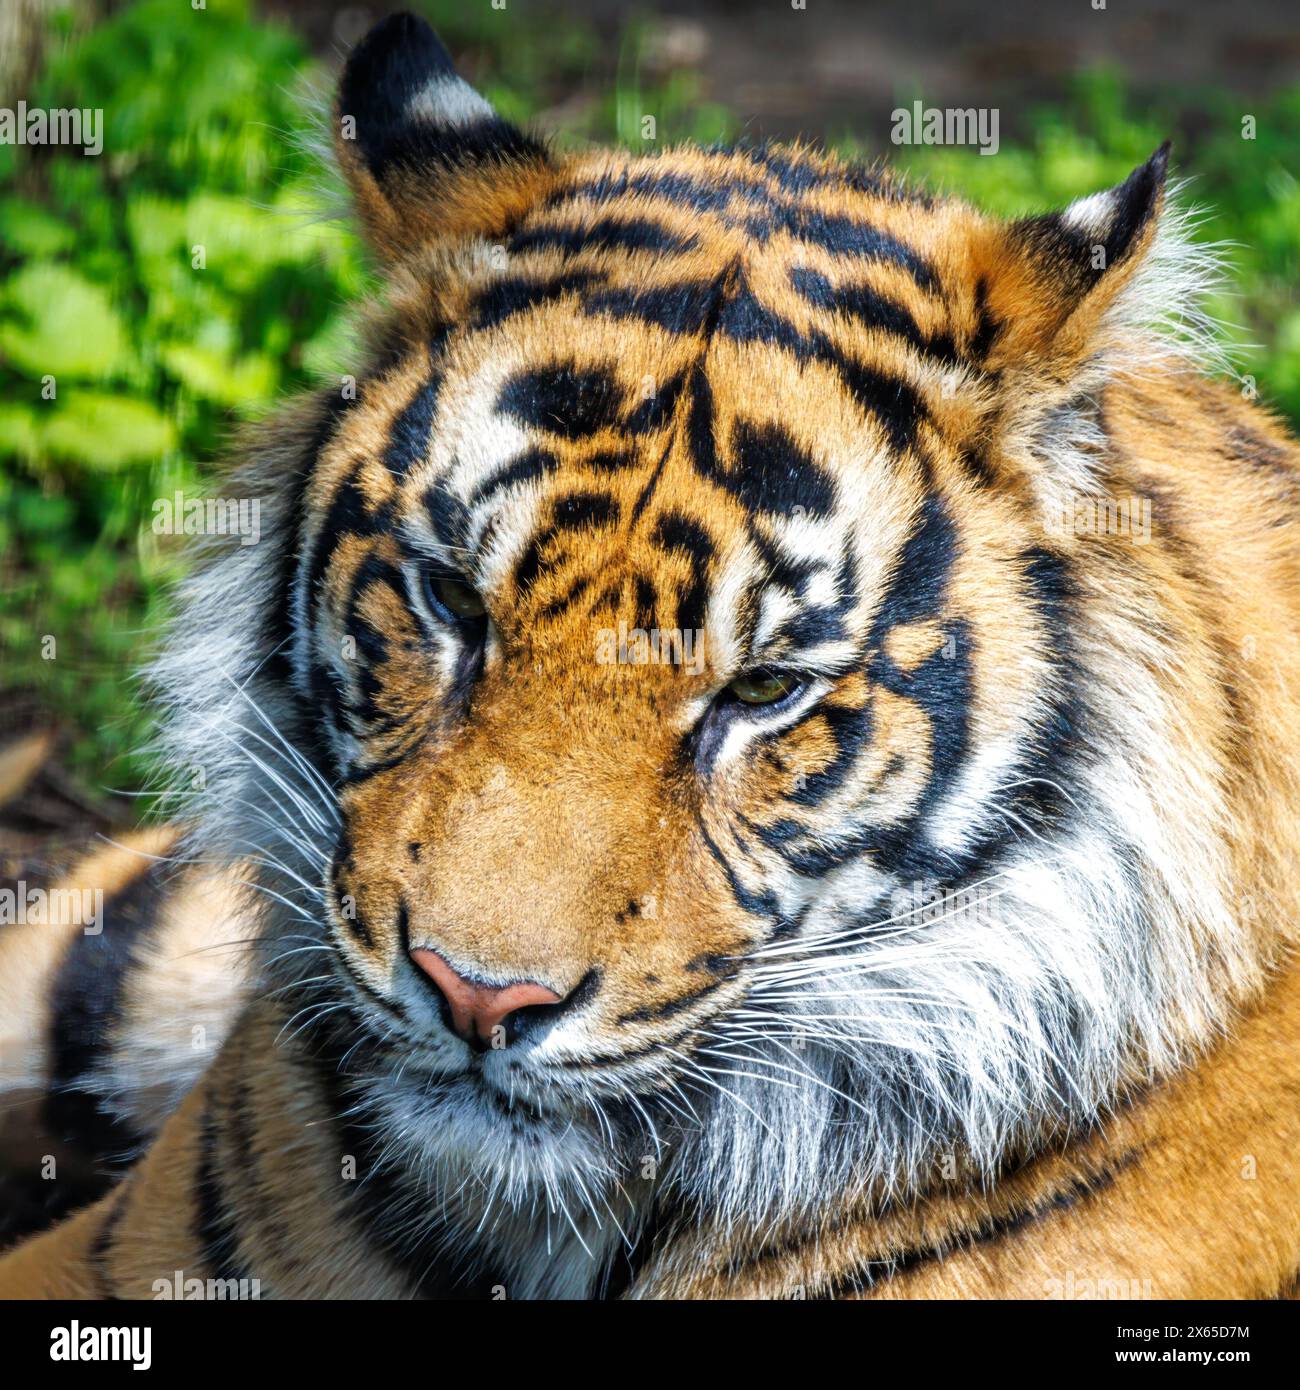 Portrait d'un tigre de Sumatra ou de Sunda, Panthera tigris sondaica , la plus petite sous-espèce de tigre et en danger critique d'extinction dans la nature. Banque D'Images